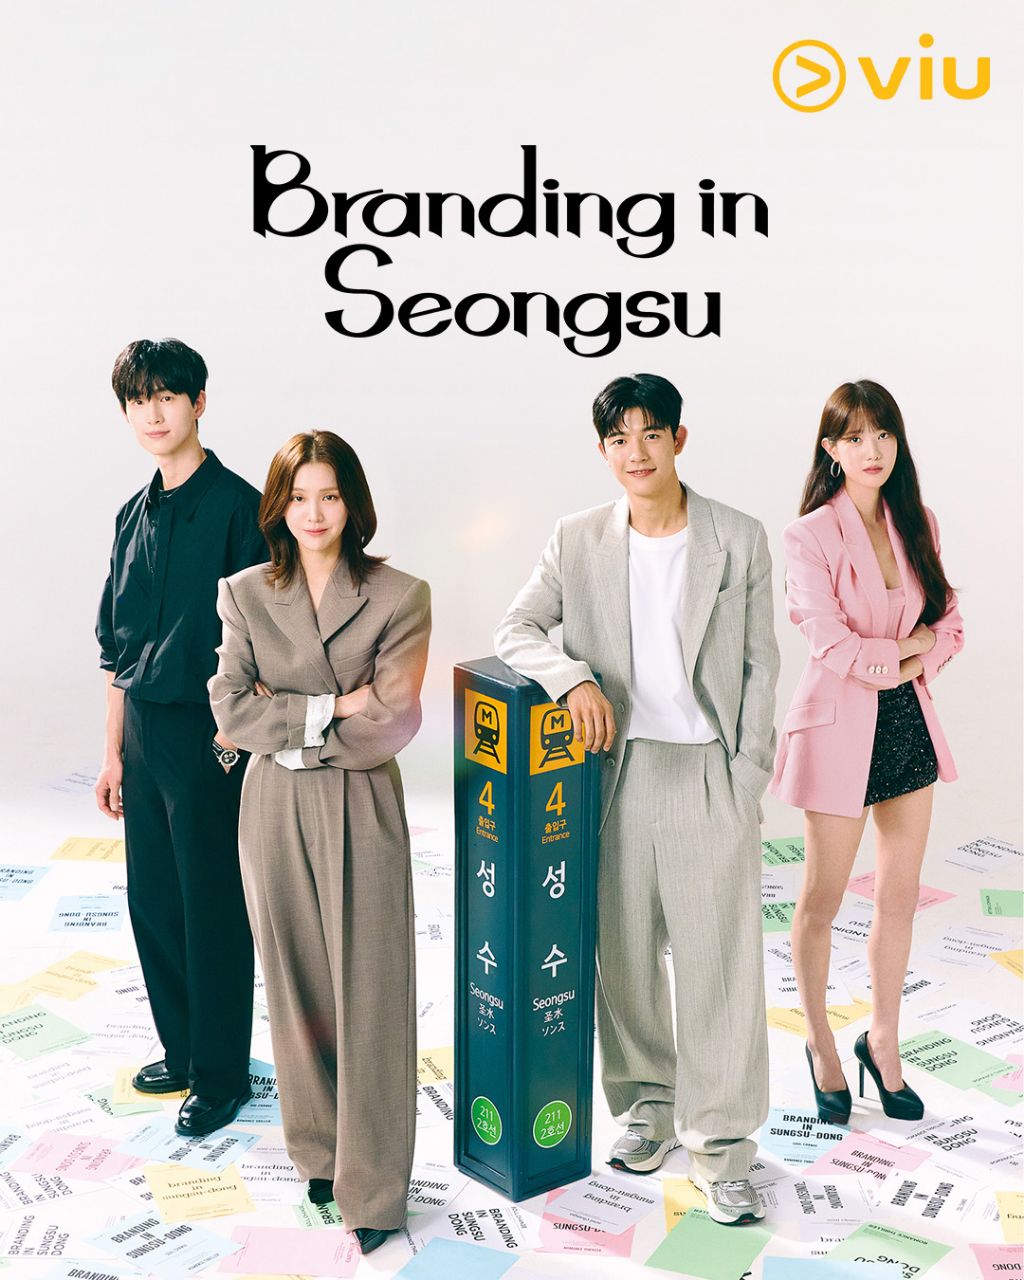 مسلسل العلامة التجارية في سيونغسو Branding in Seongsu الحلقة 24 والاخيرة